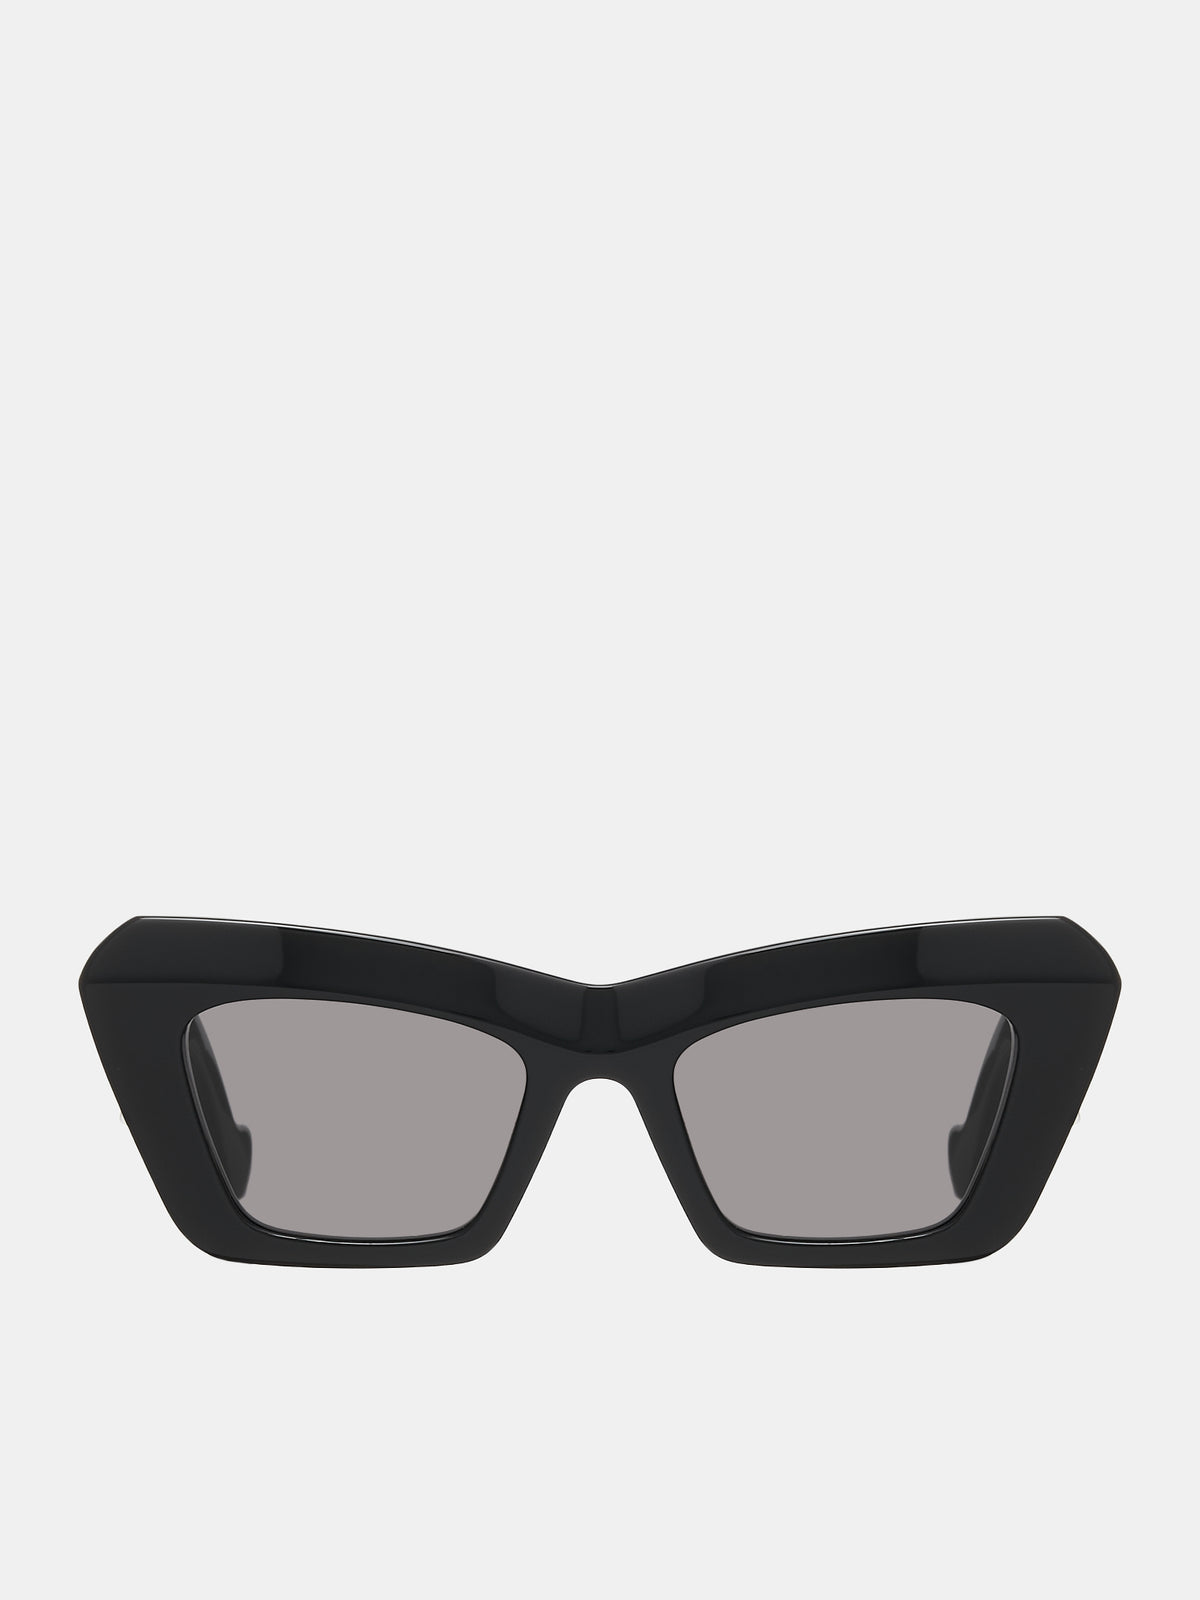 LOEWE Rectangular Cateye Sunglasses | H. Lorenzo - front